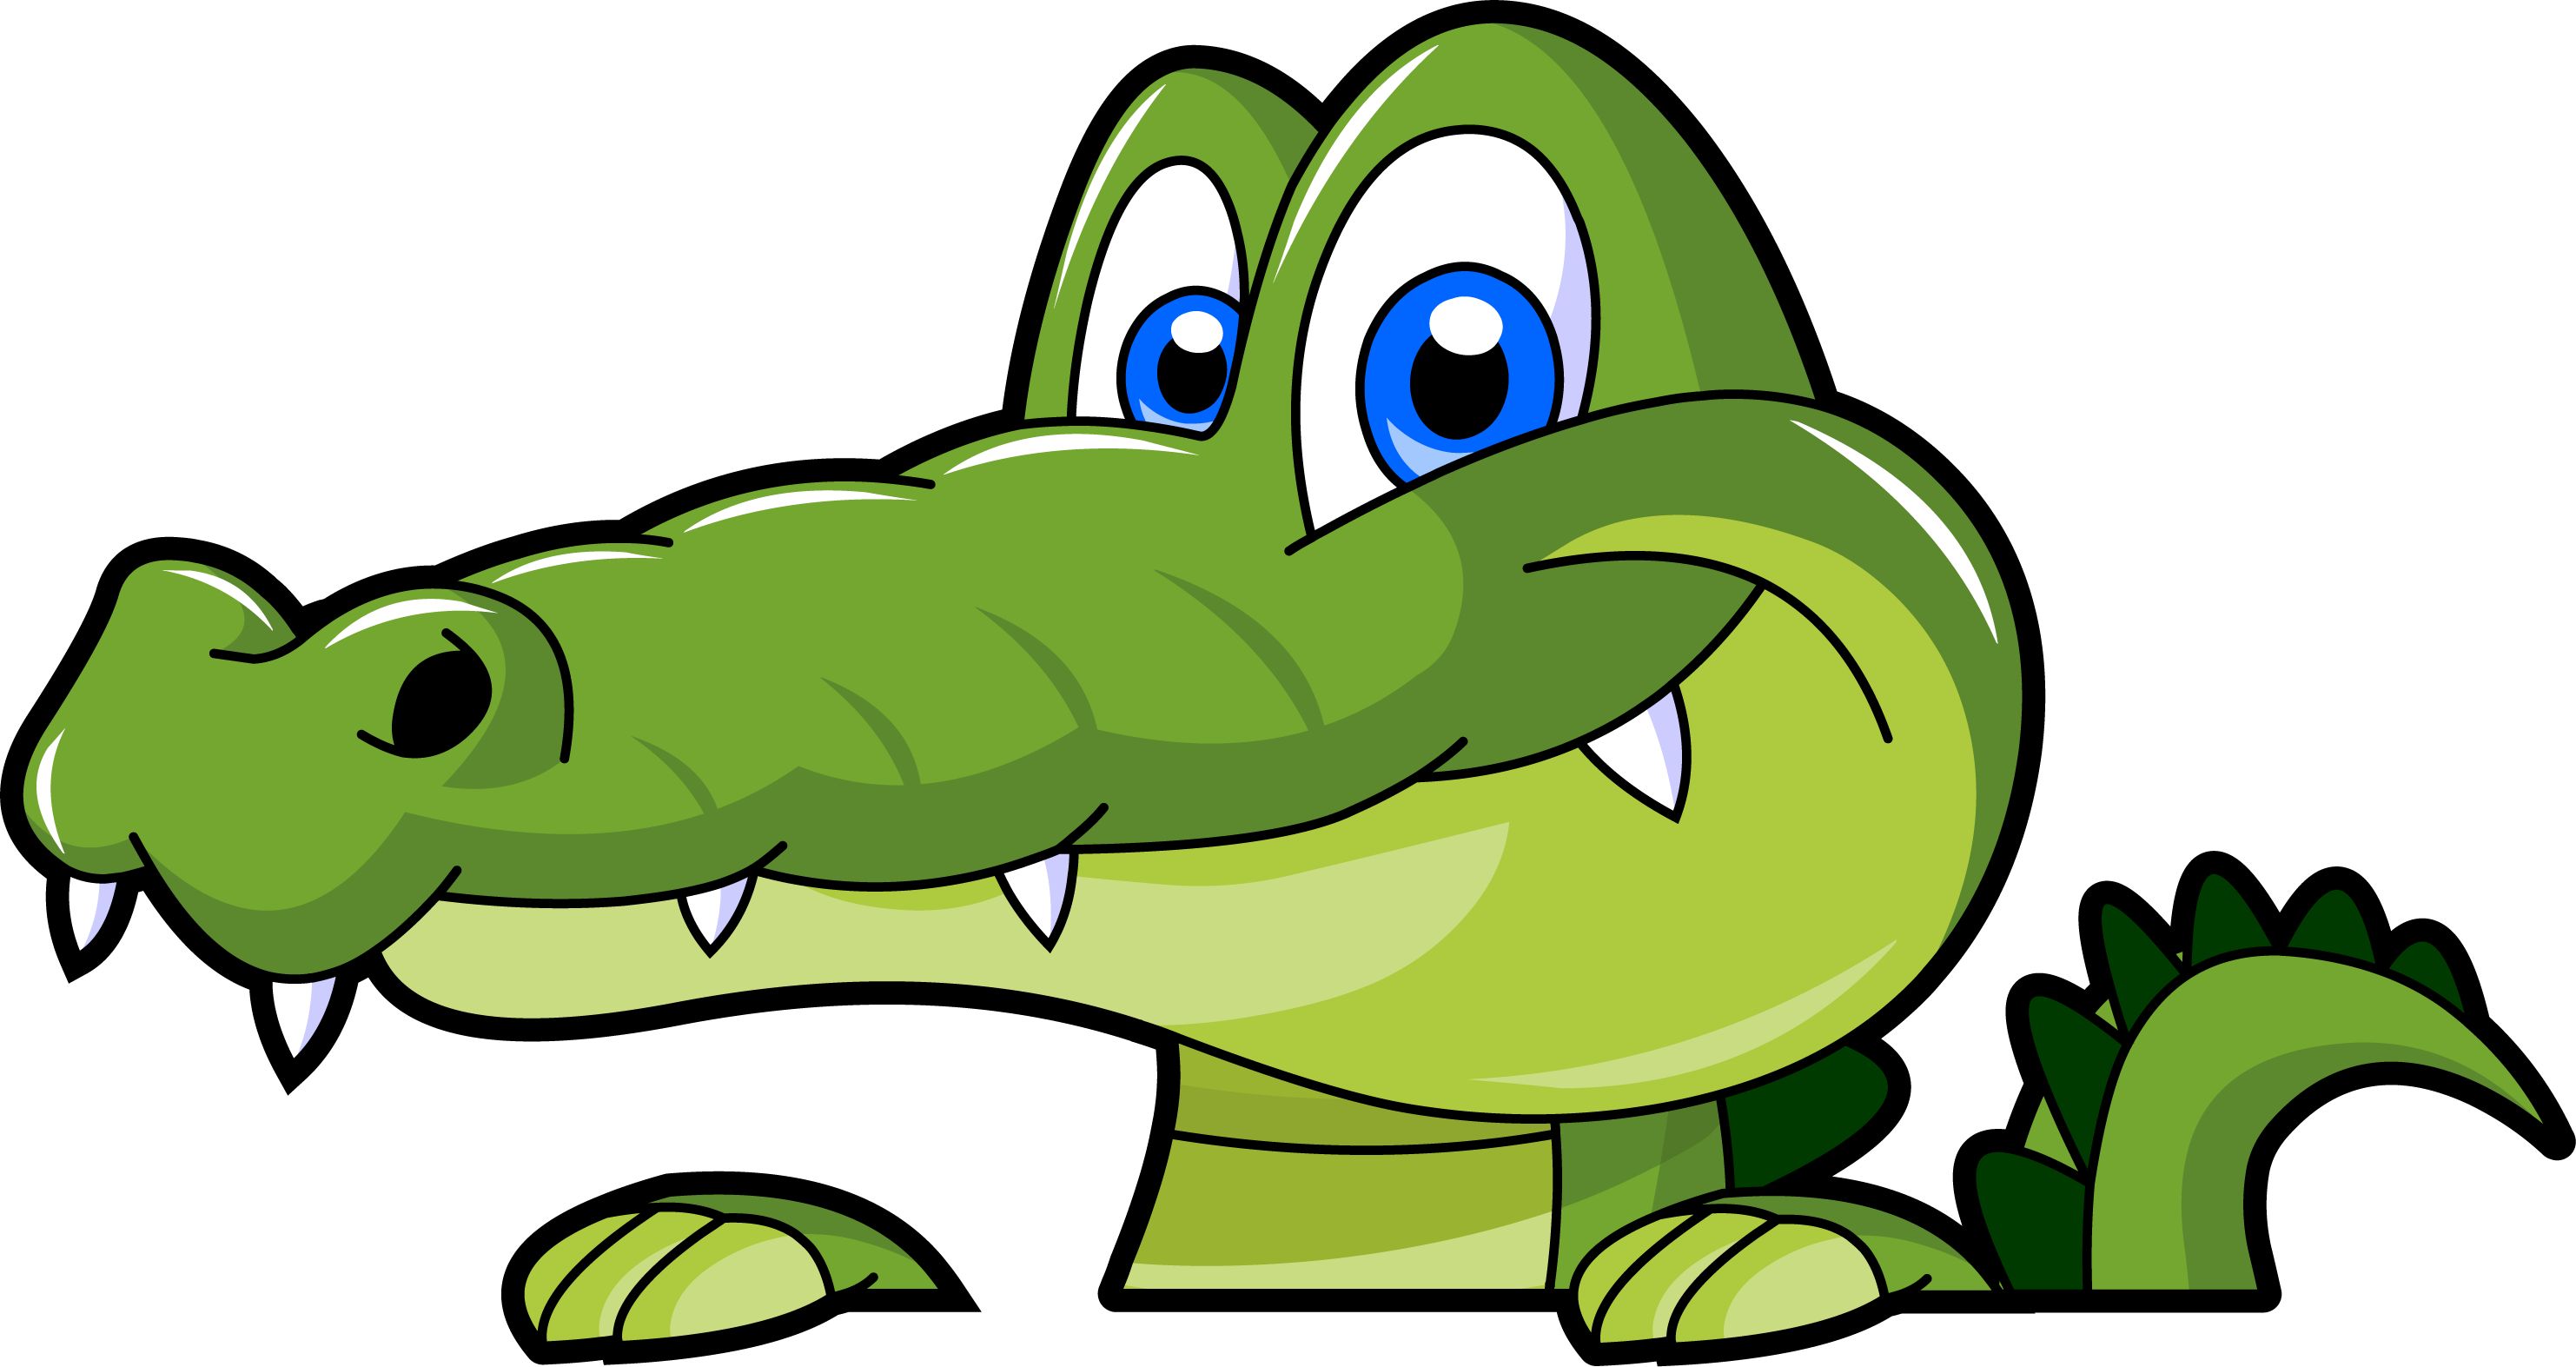 Swamp alligator cartoon clipart image clipartix